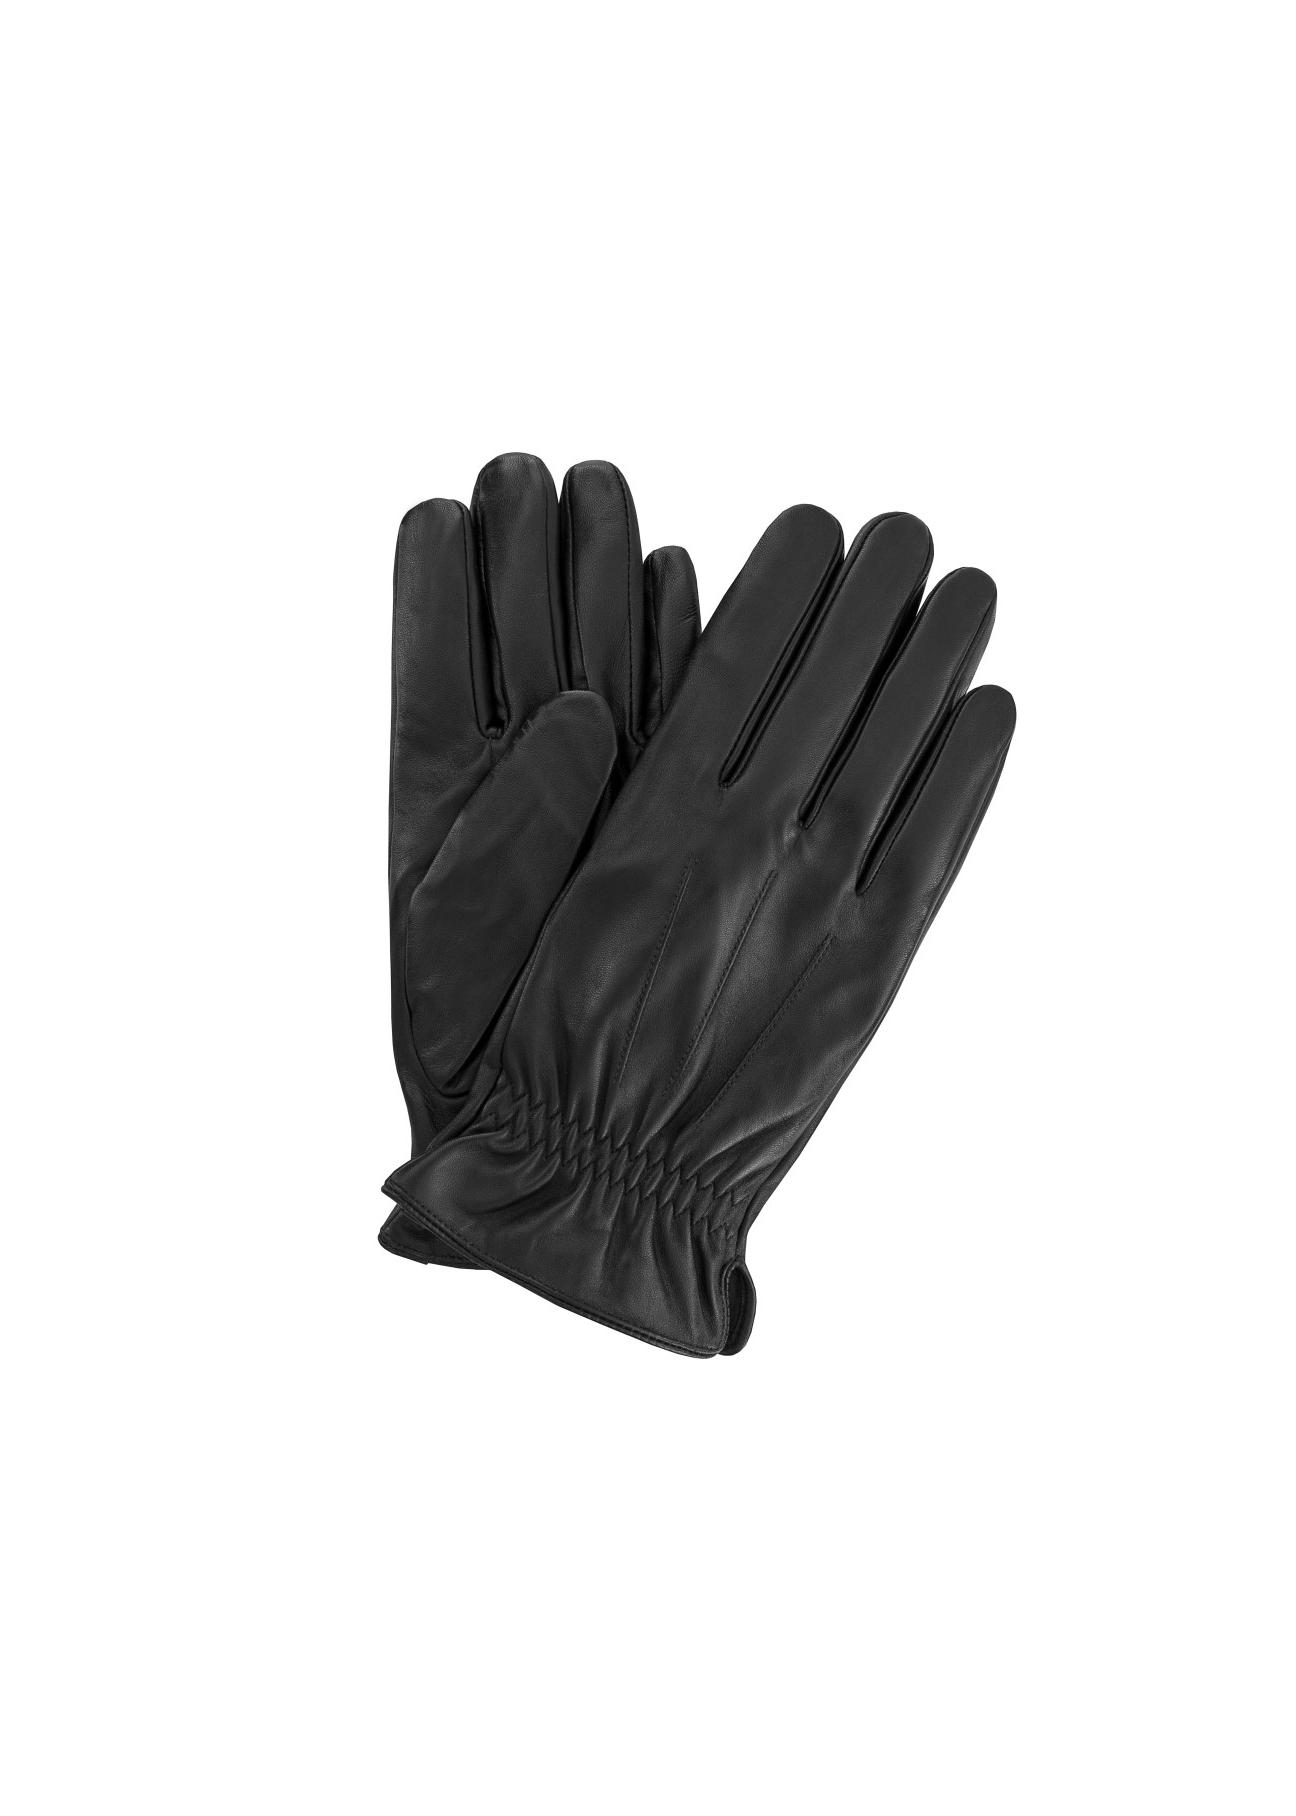 Skórzane rękawiczki męskie ze ściągaczem REKMS-0011-99(Z23)